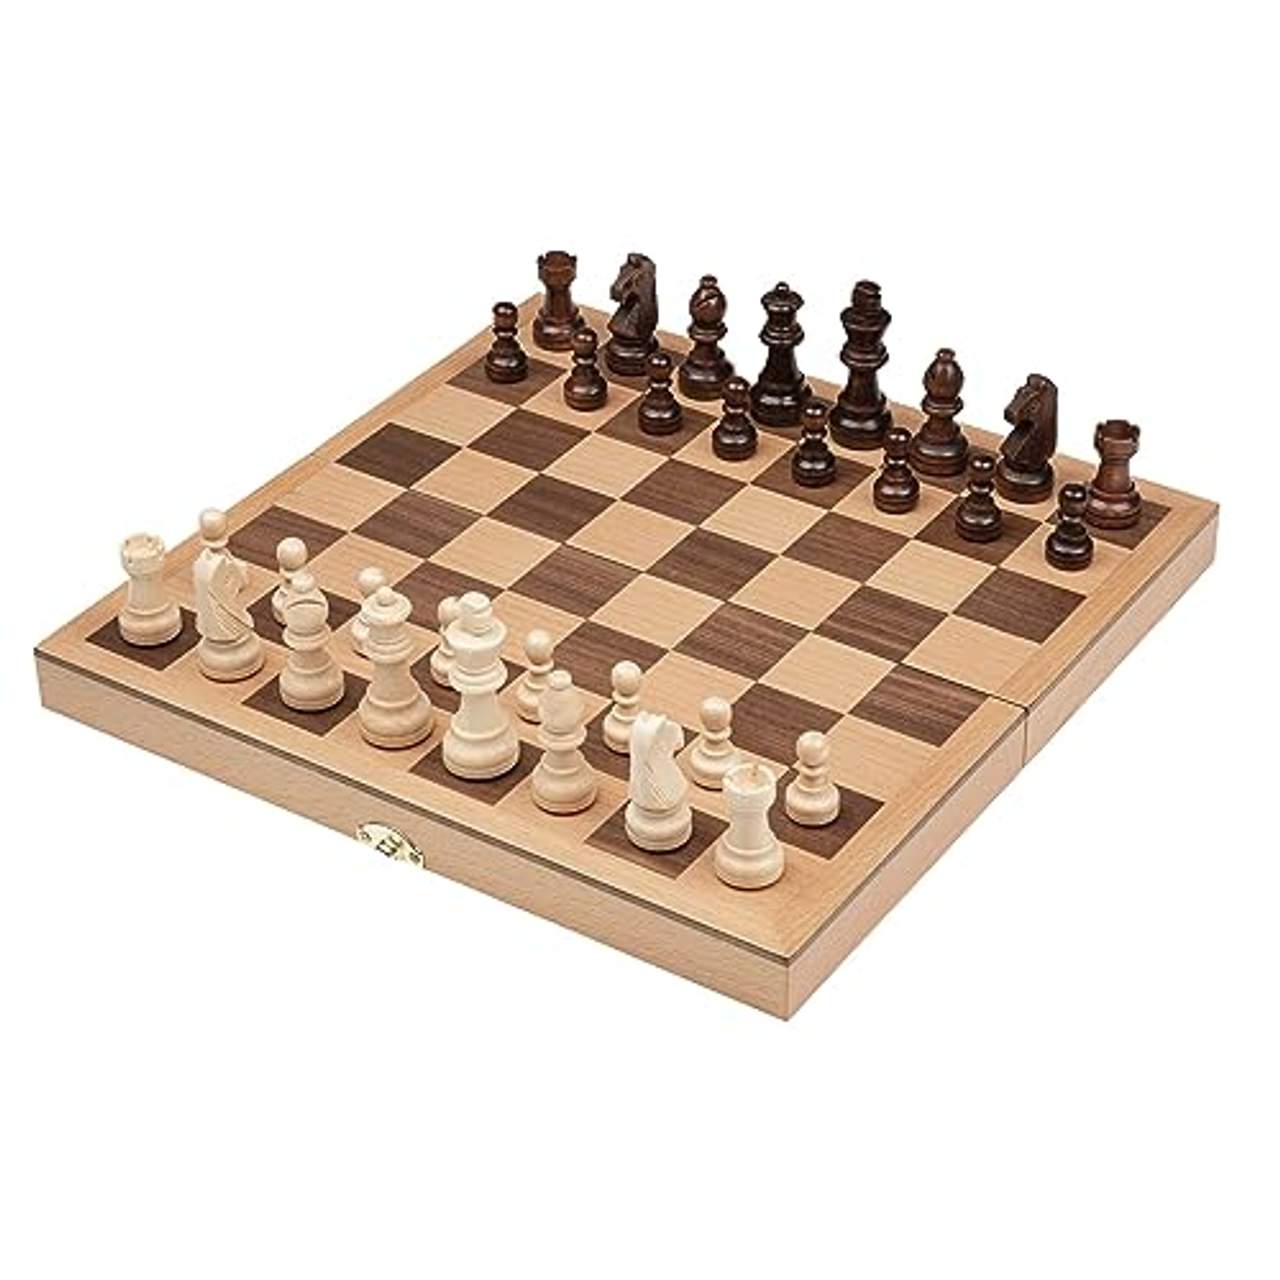 Philos 2708 Schach Schachspiel